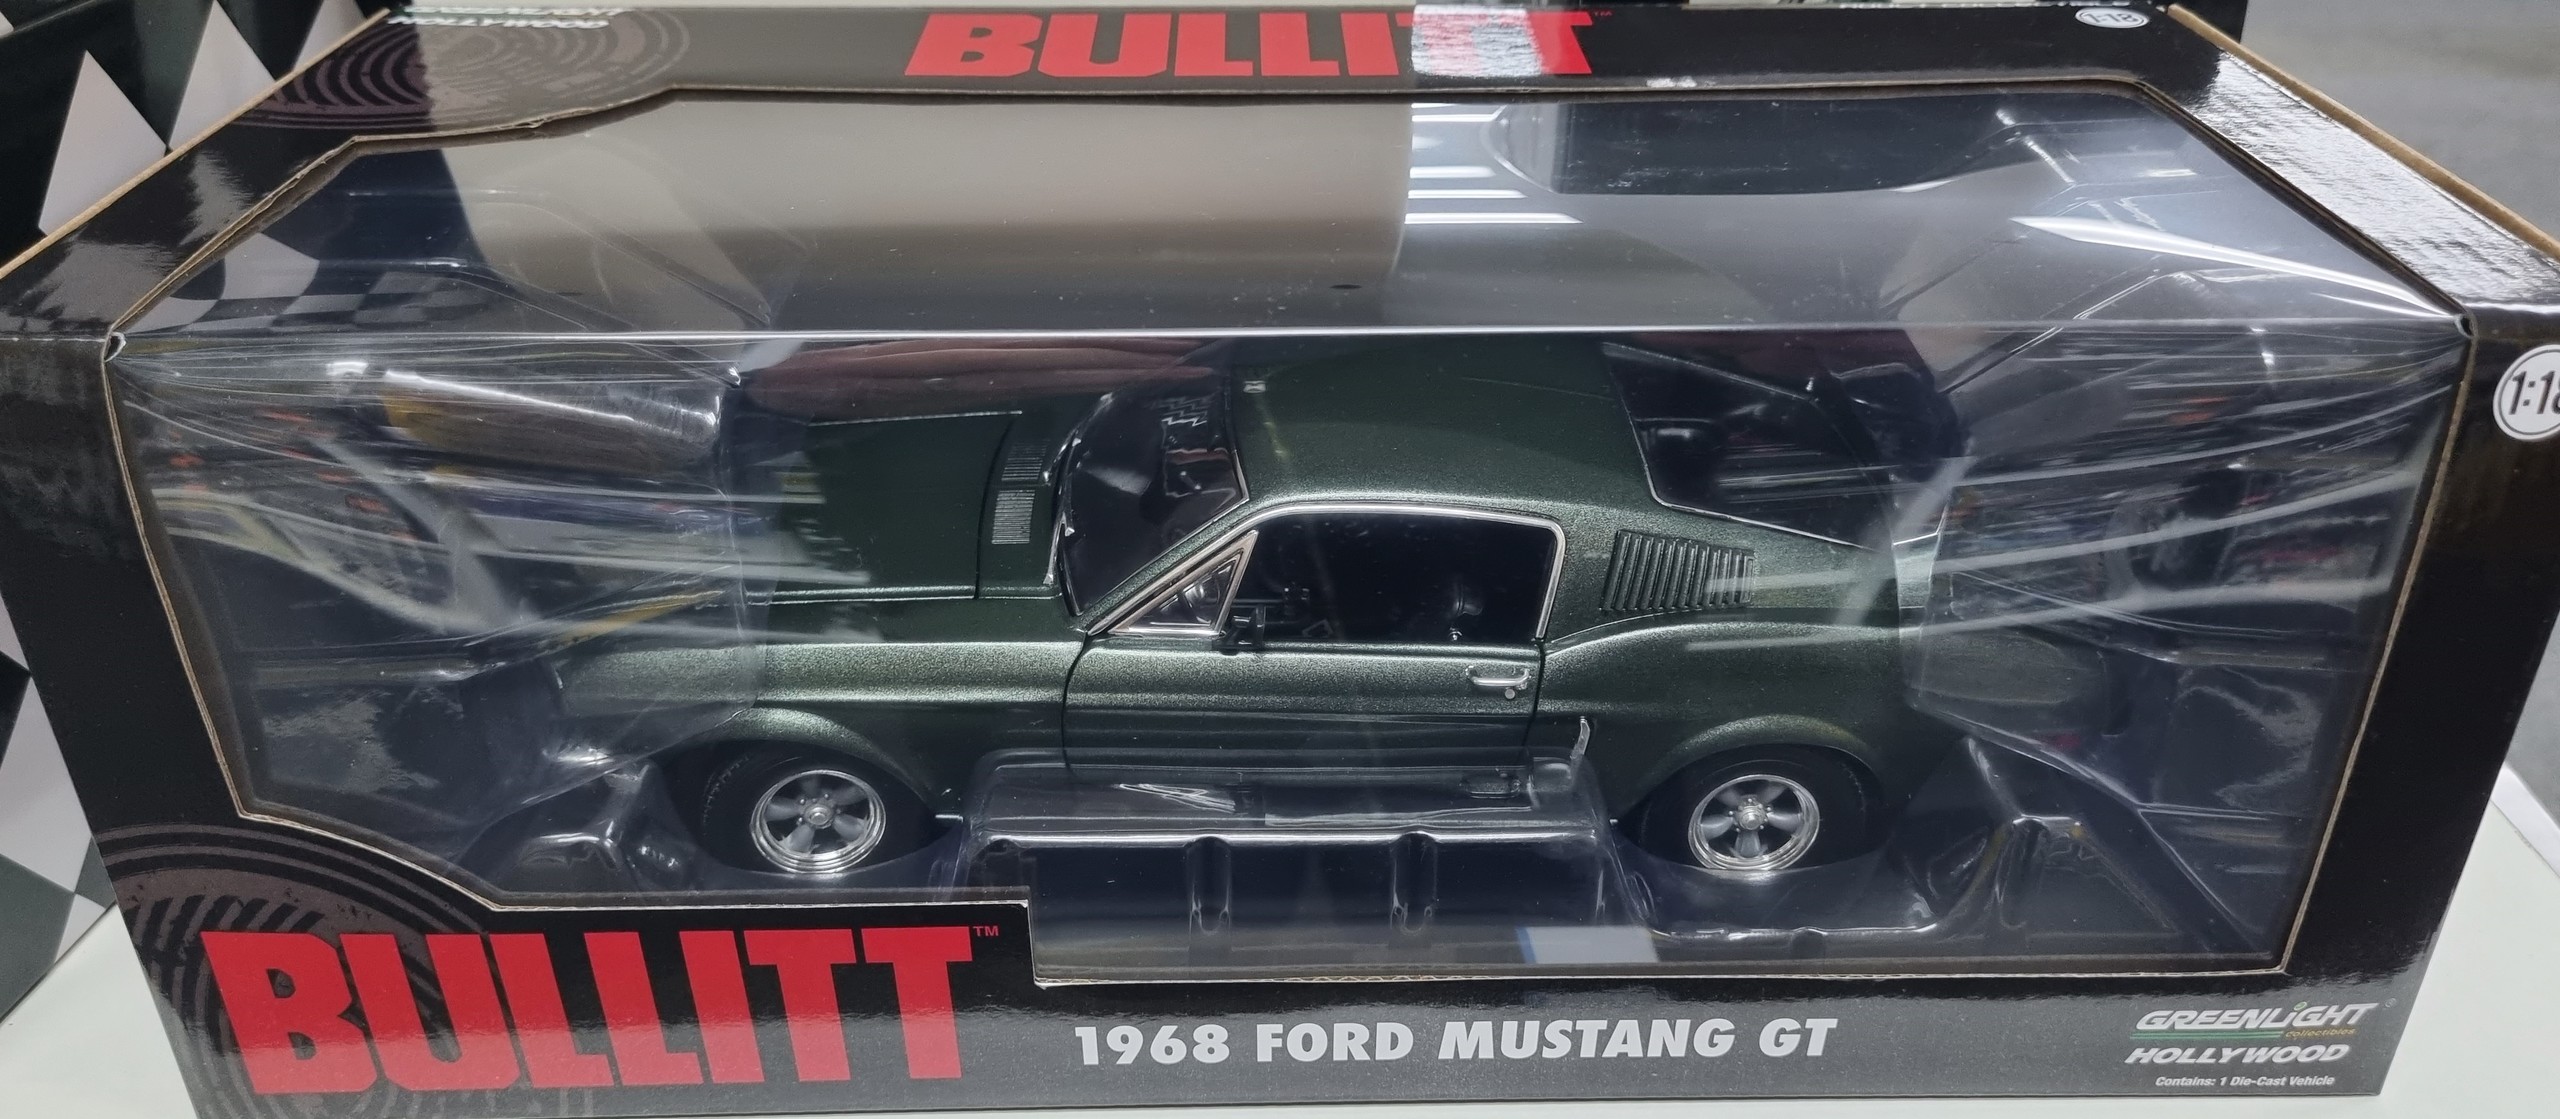 1968 Ford Mustang GT Bullitt Movie Car 1/18 Greenlight